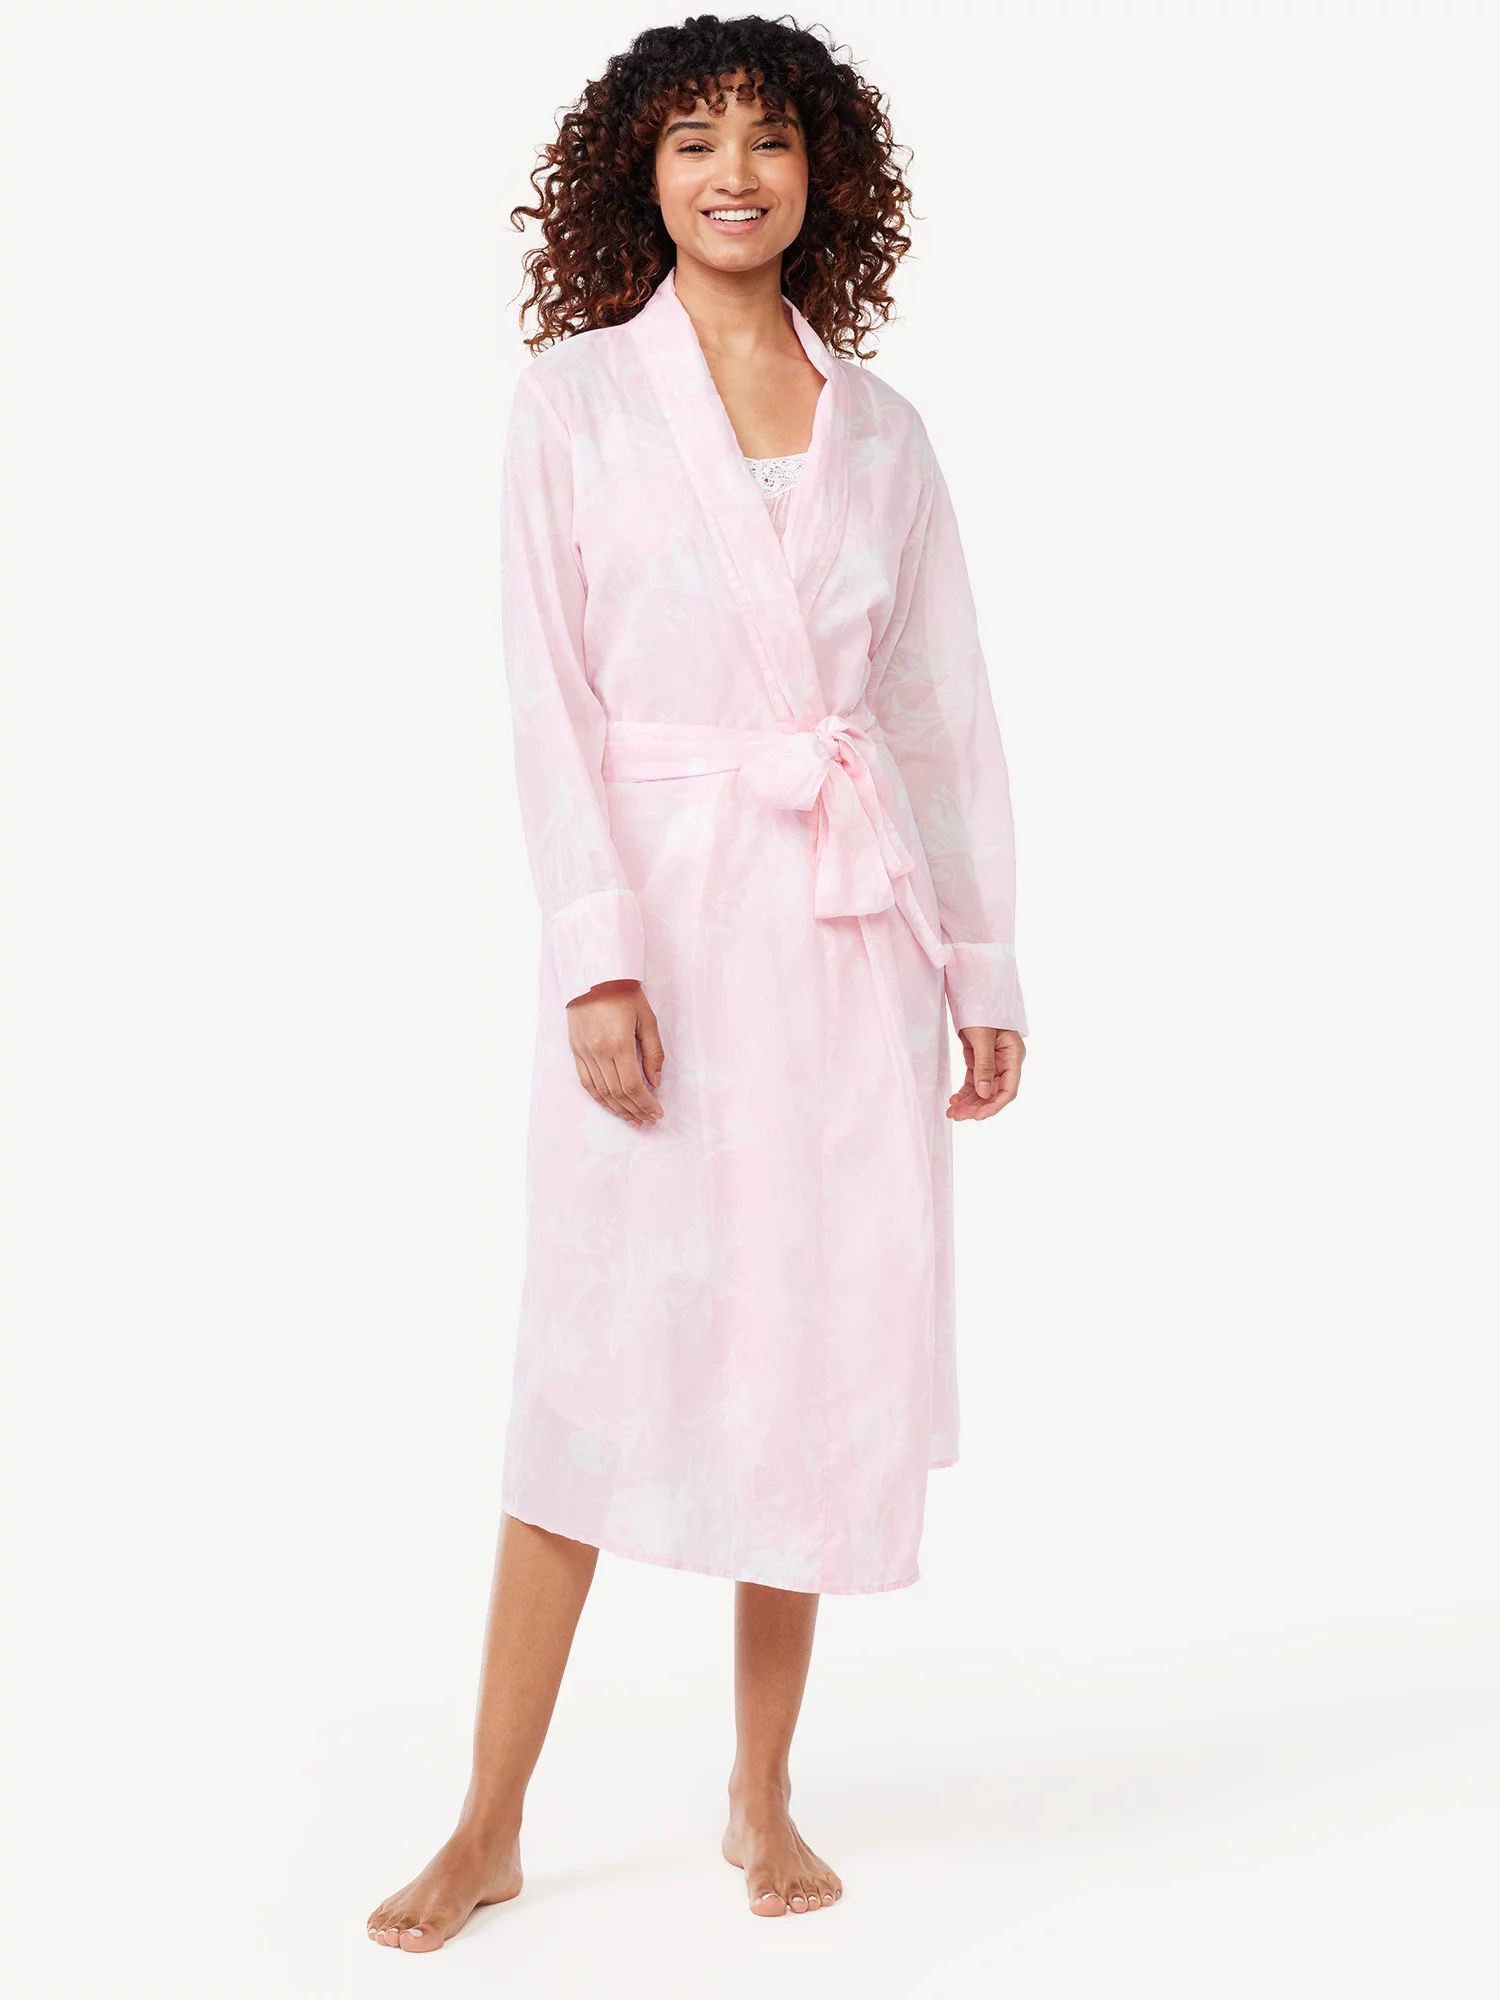 Joyspun Women's Woven Floral Robe, Sizes S to 3X | Walmart (US)